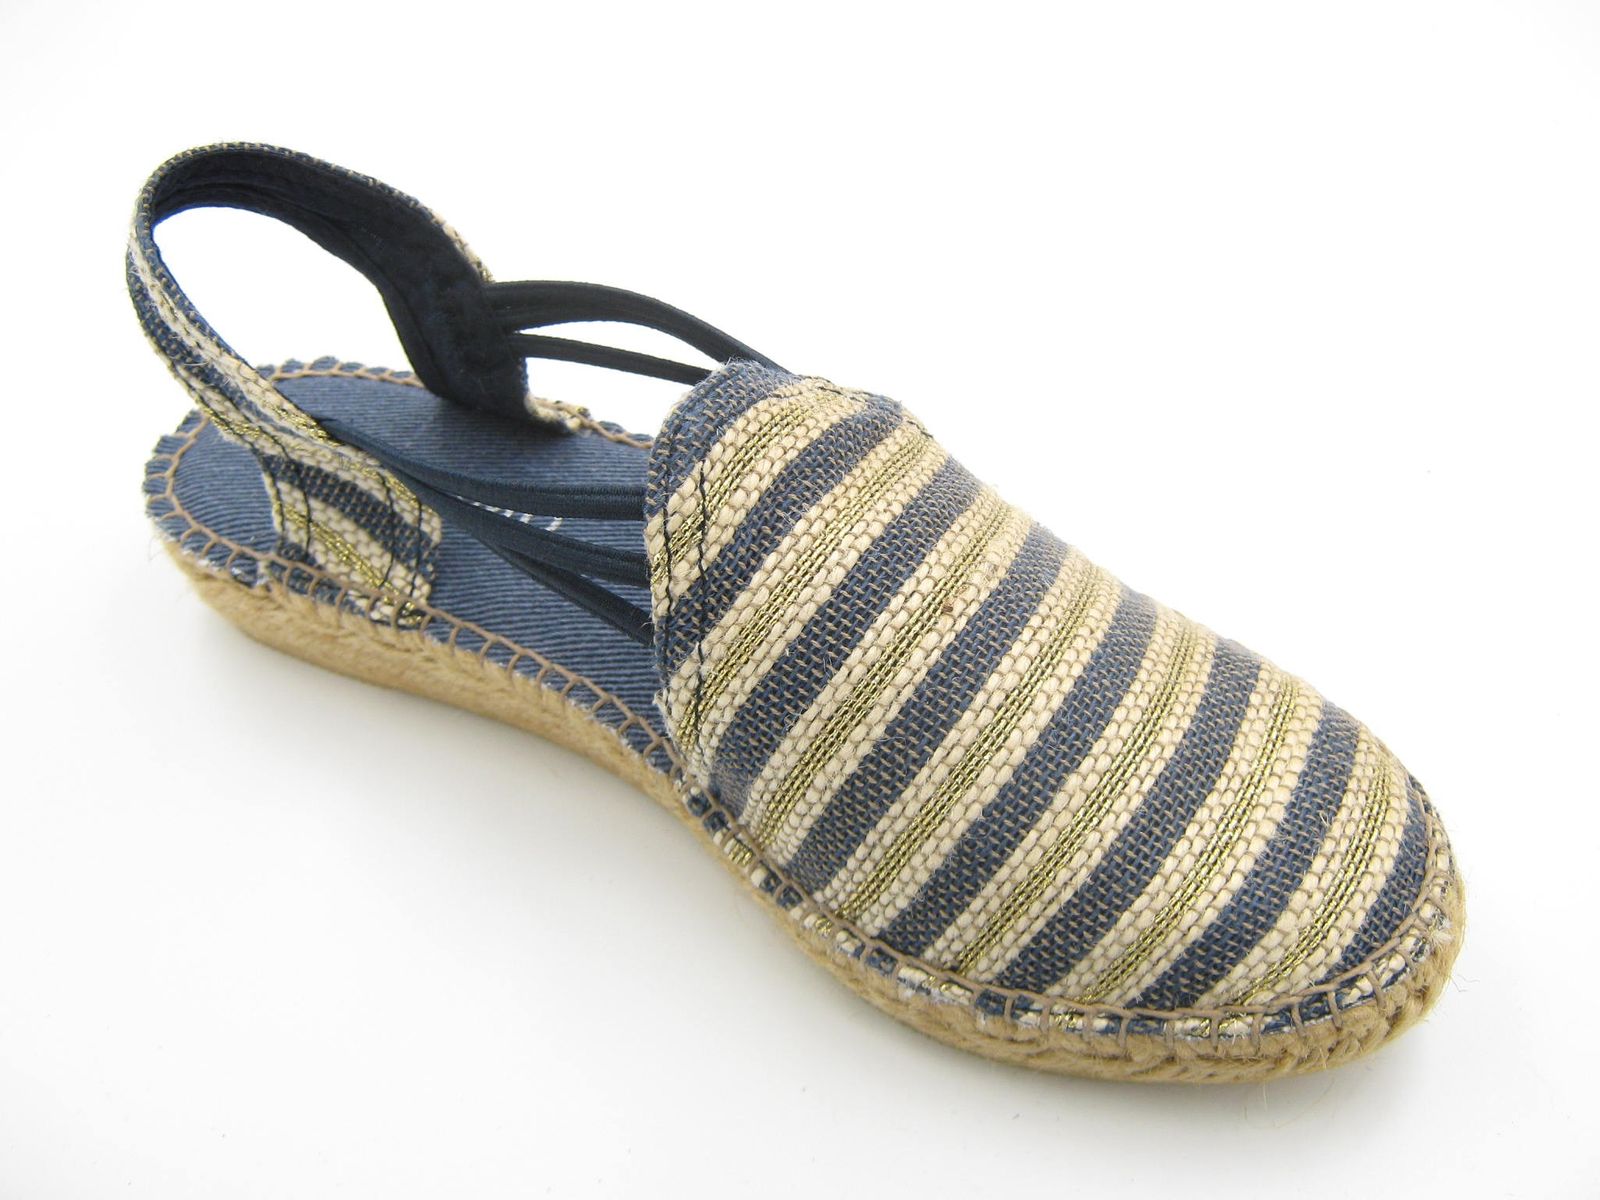 Schuh von SABU, 39